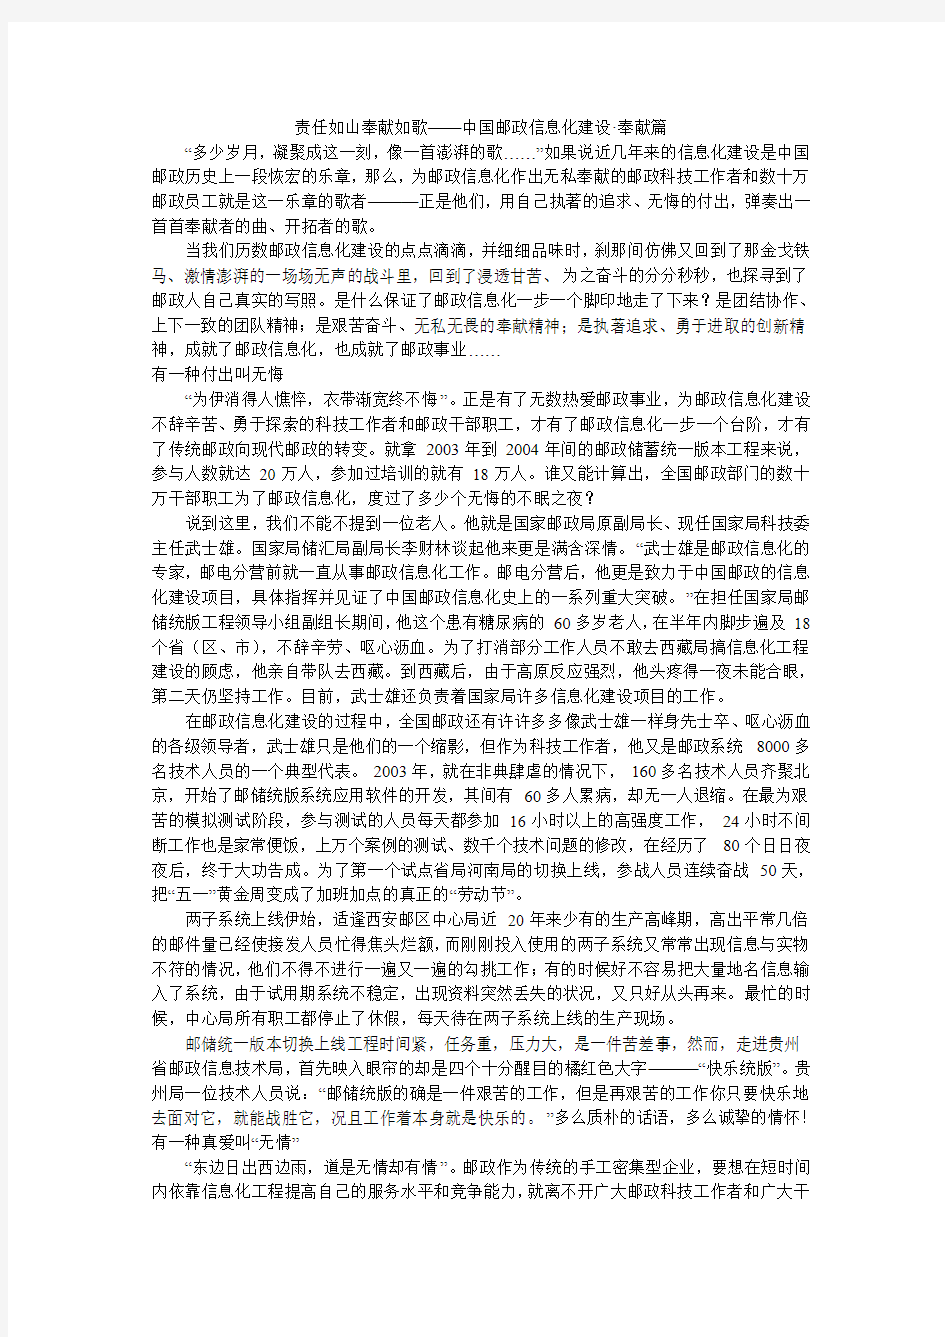 责任如山奉献如歌——中国邮政信息化建设·奉献篇